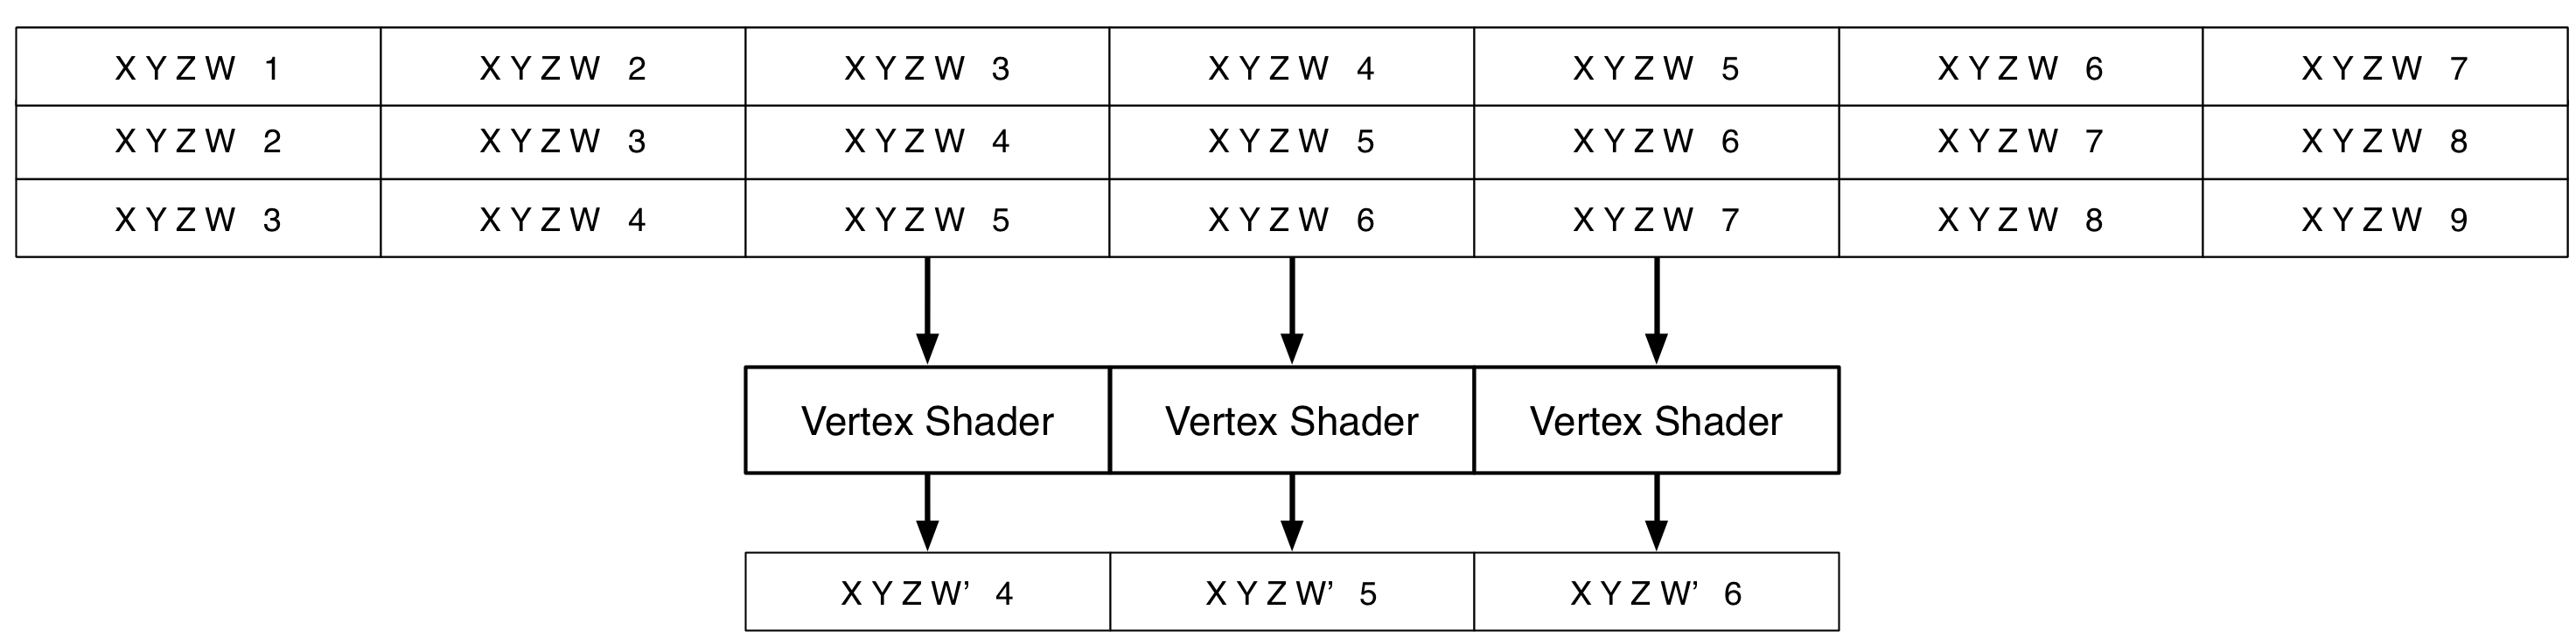 Vertex Shader Attributes